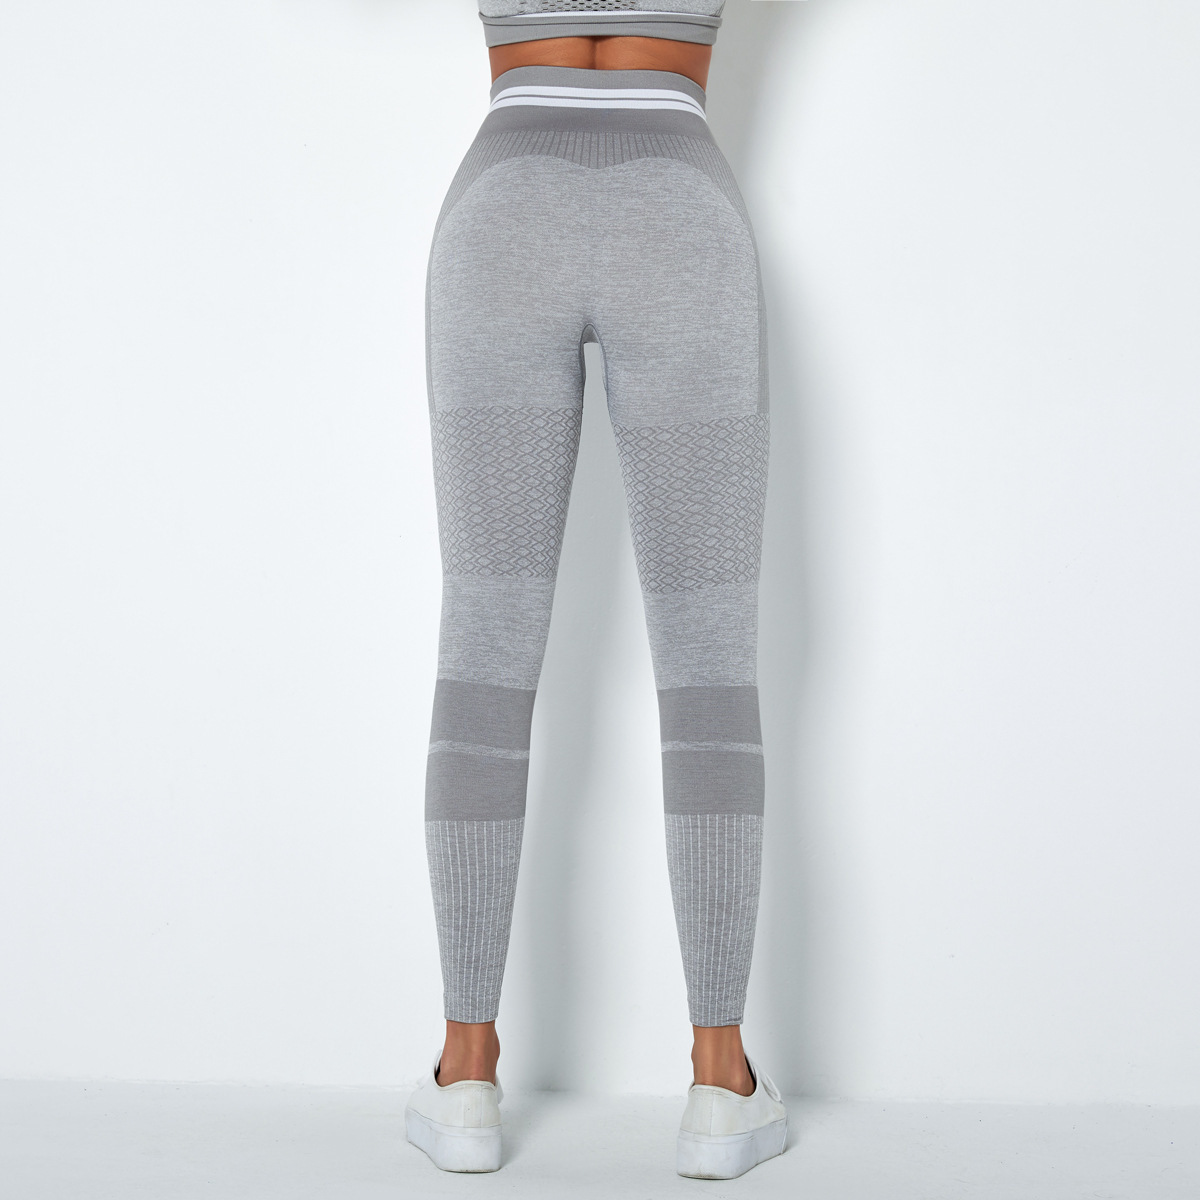 high-waist hip-lifting stretch tights yoga pants NSLX9006